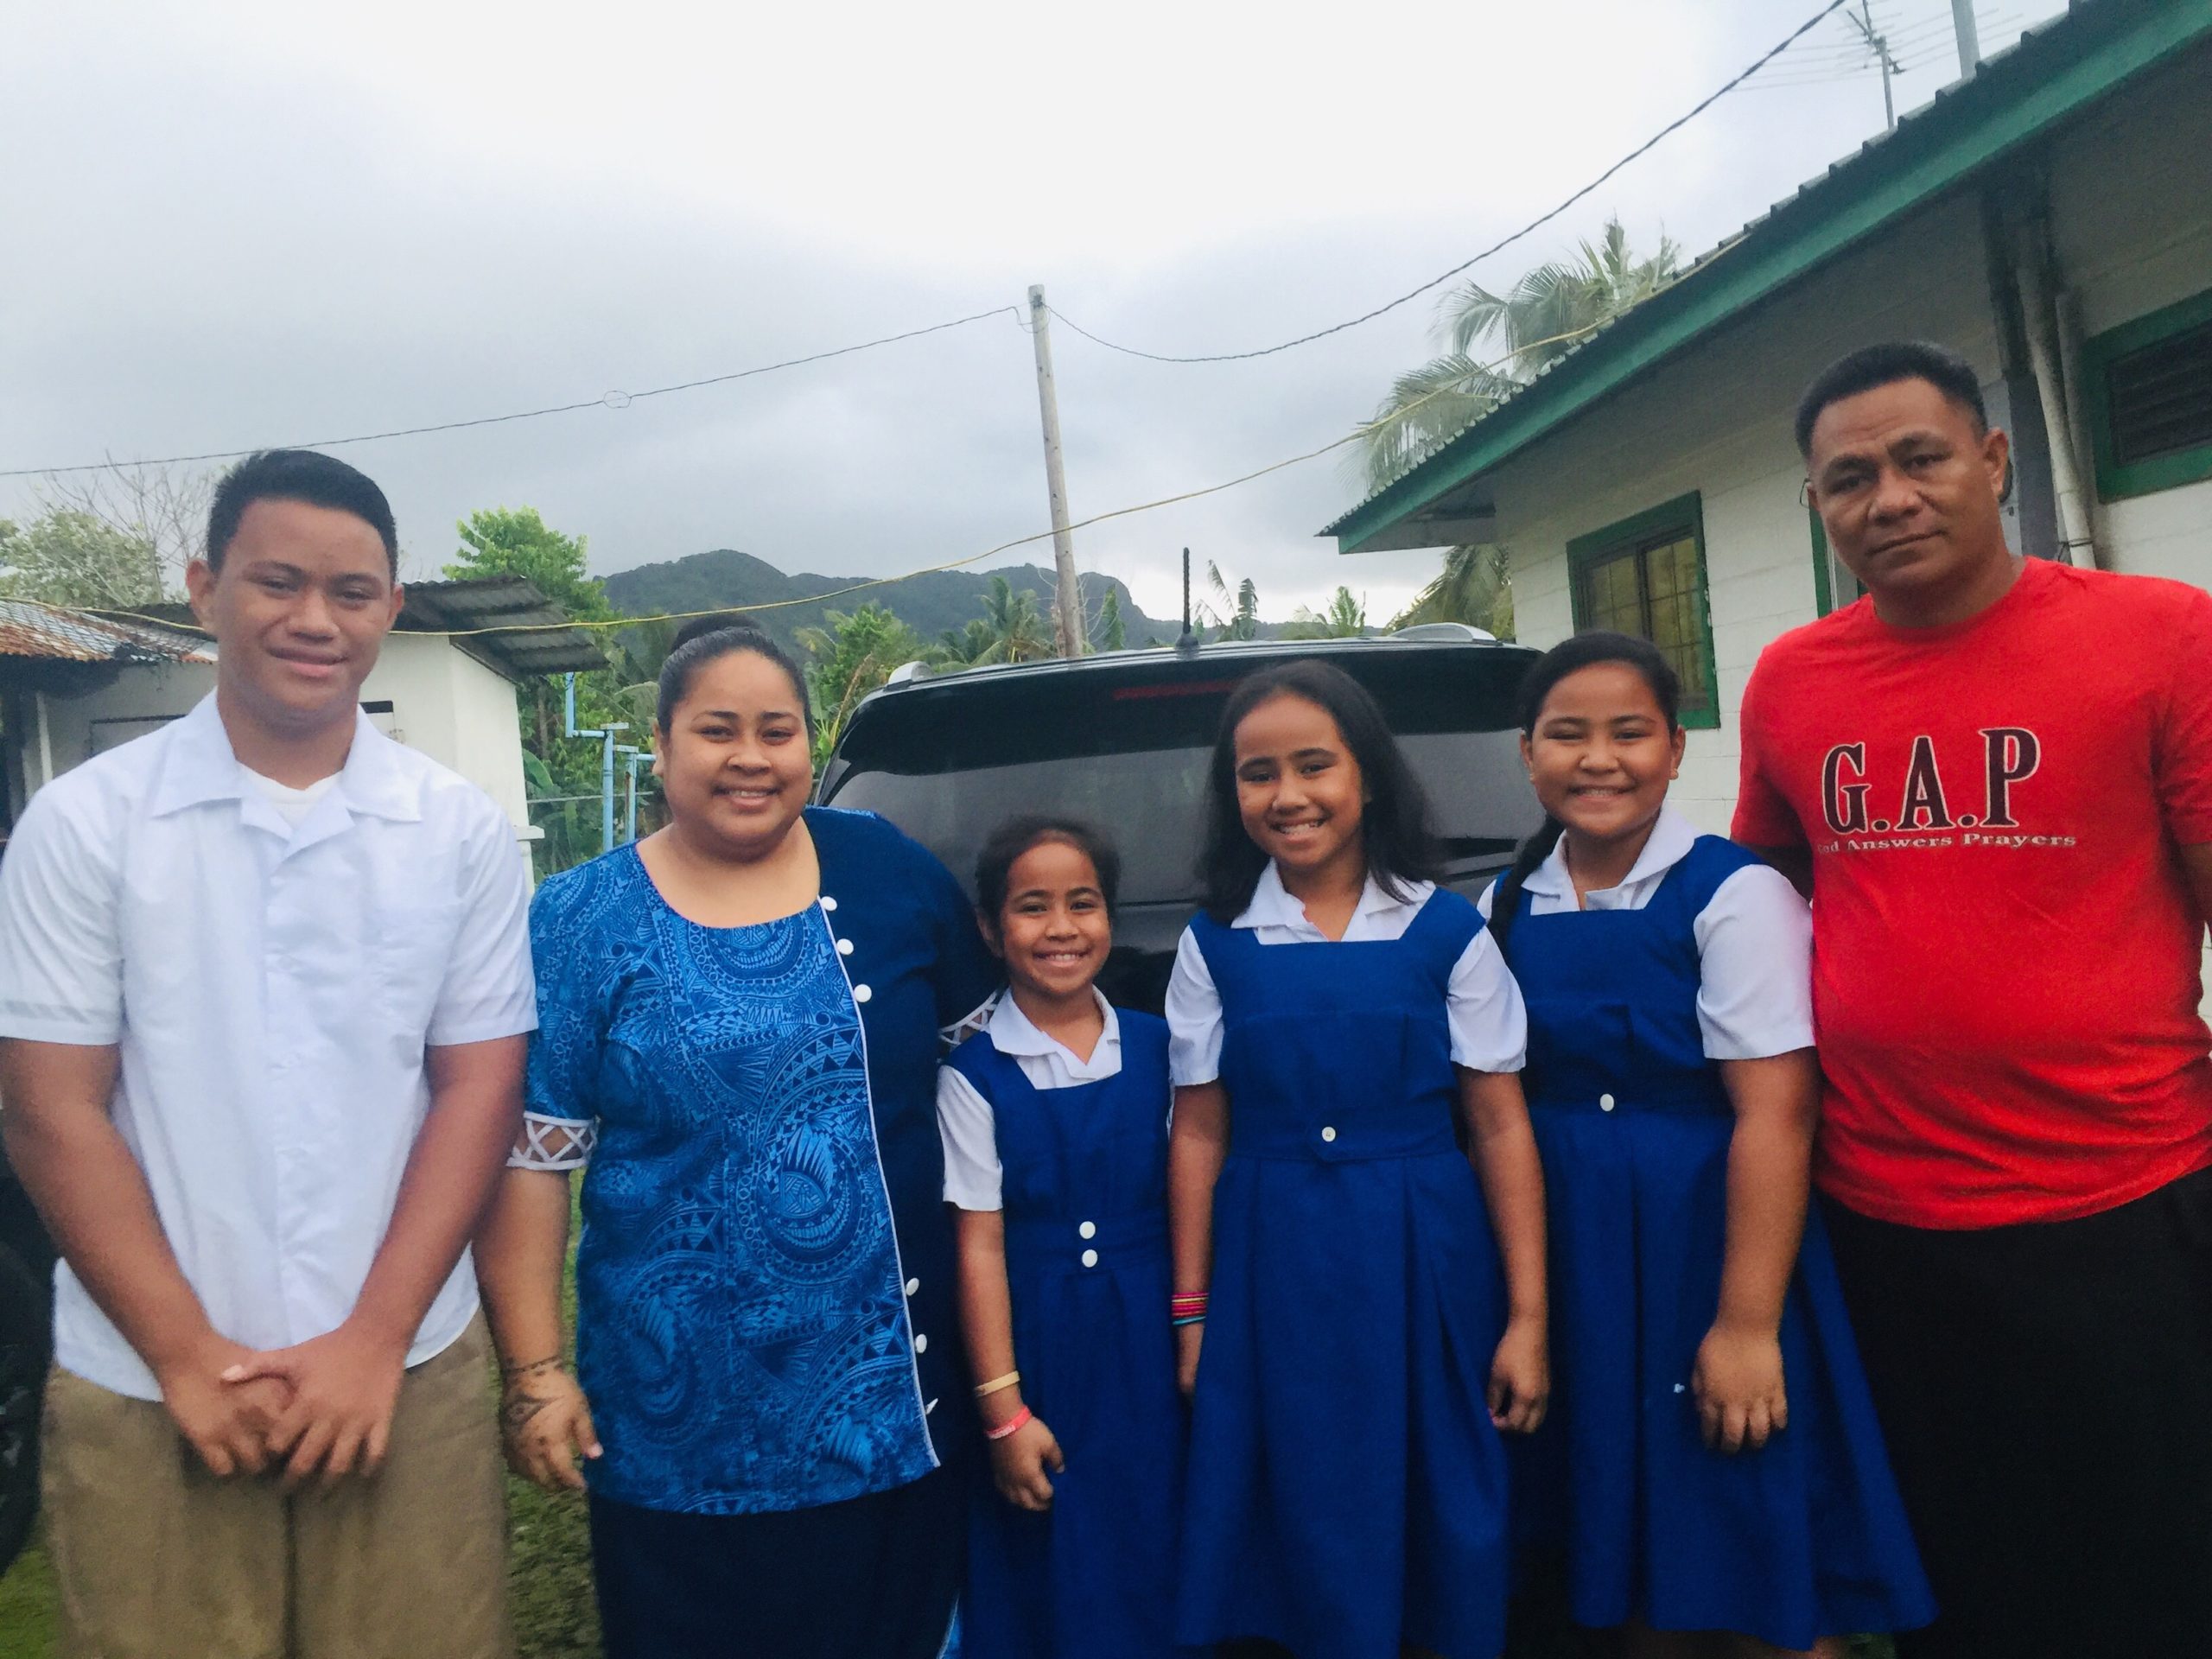 Samoa News! So grateful!  Samoa